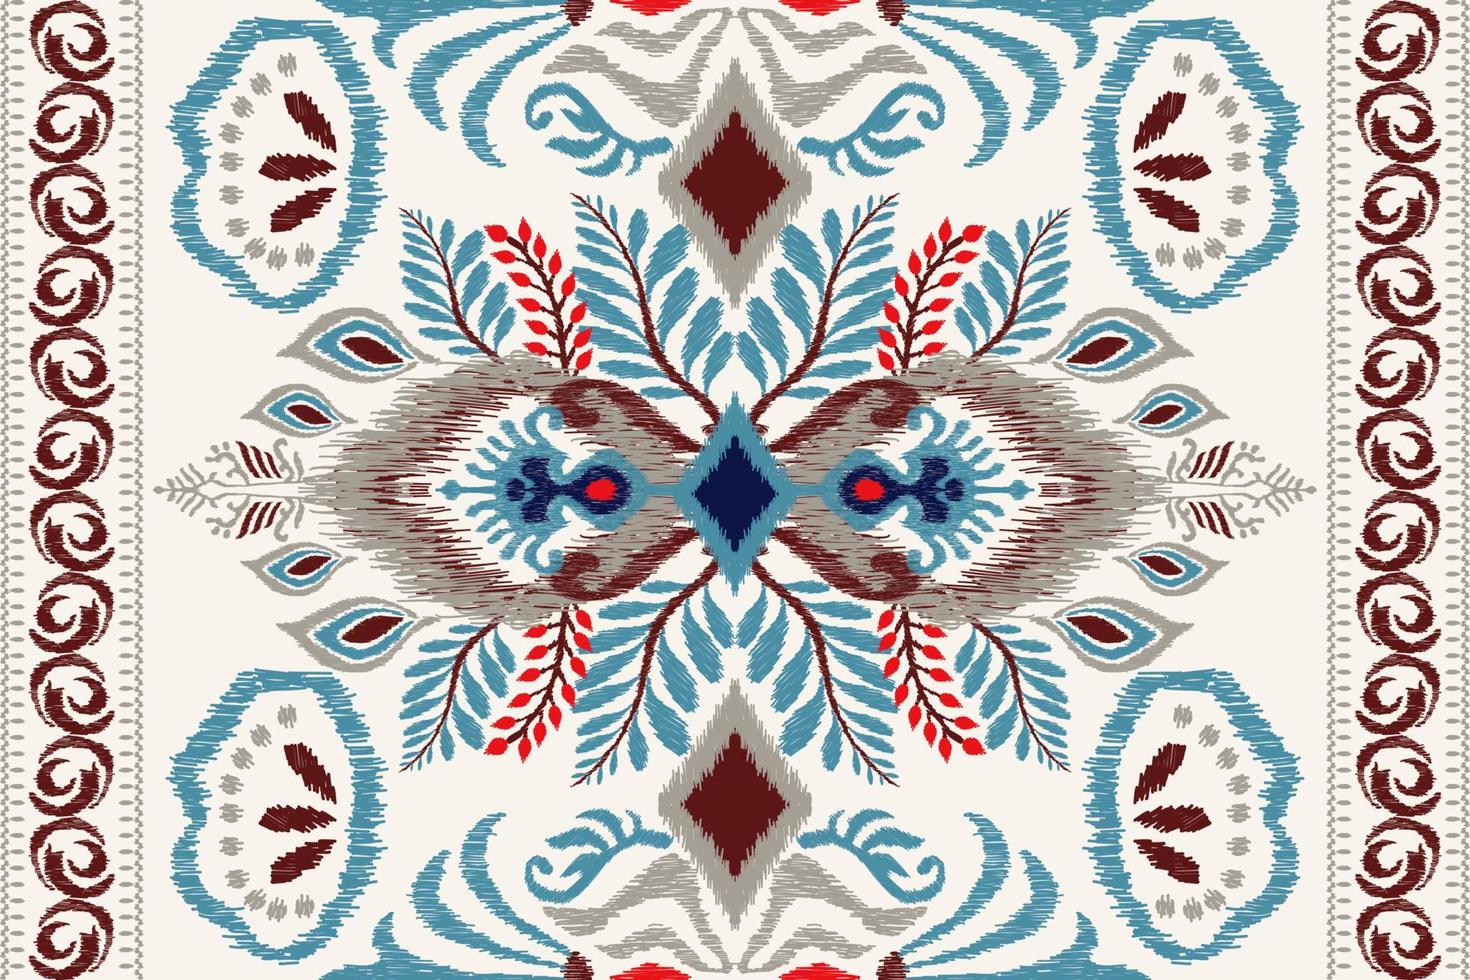 ikat bloemen paisley borduurwerk Aan wit achtergrond.geometrisch etnisch oosters patroon traditioneel.azteken stijl abstract vector illustratie.ontwerp voor textuur,stof,kleding,verpakking,decoratie,tapijt.